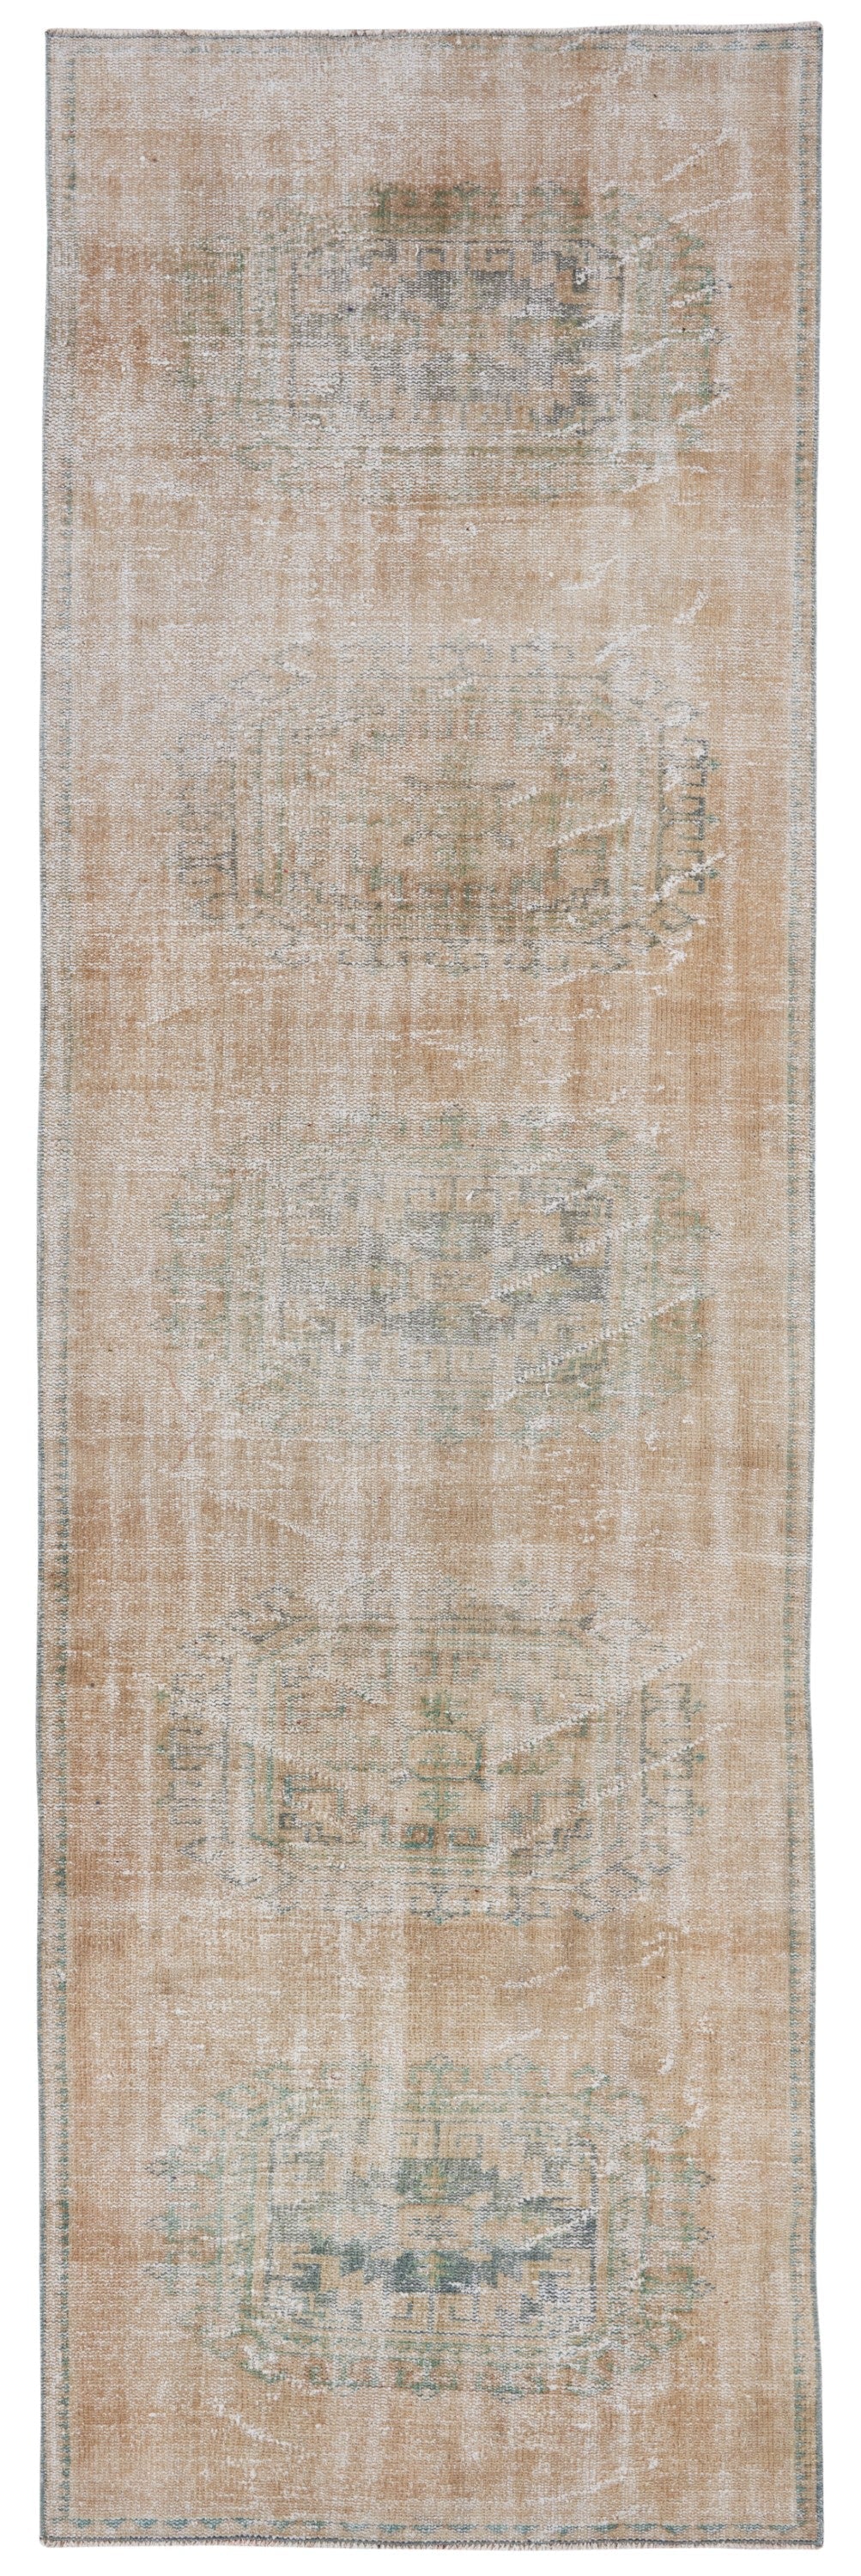 1865 - 103 x 323 cm